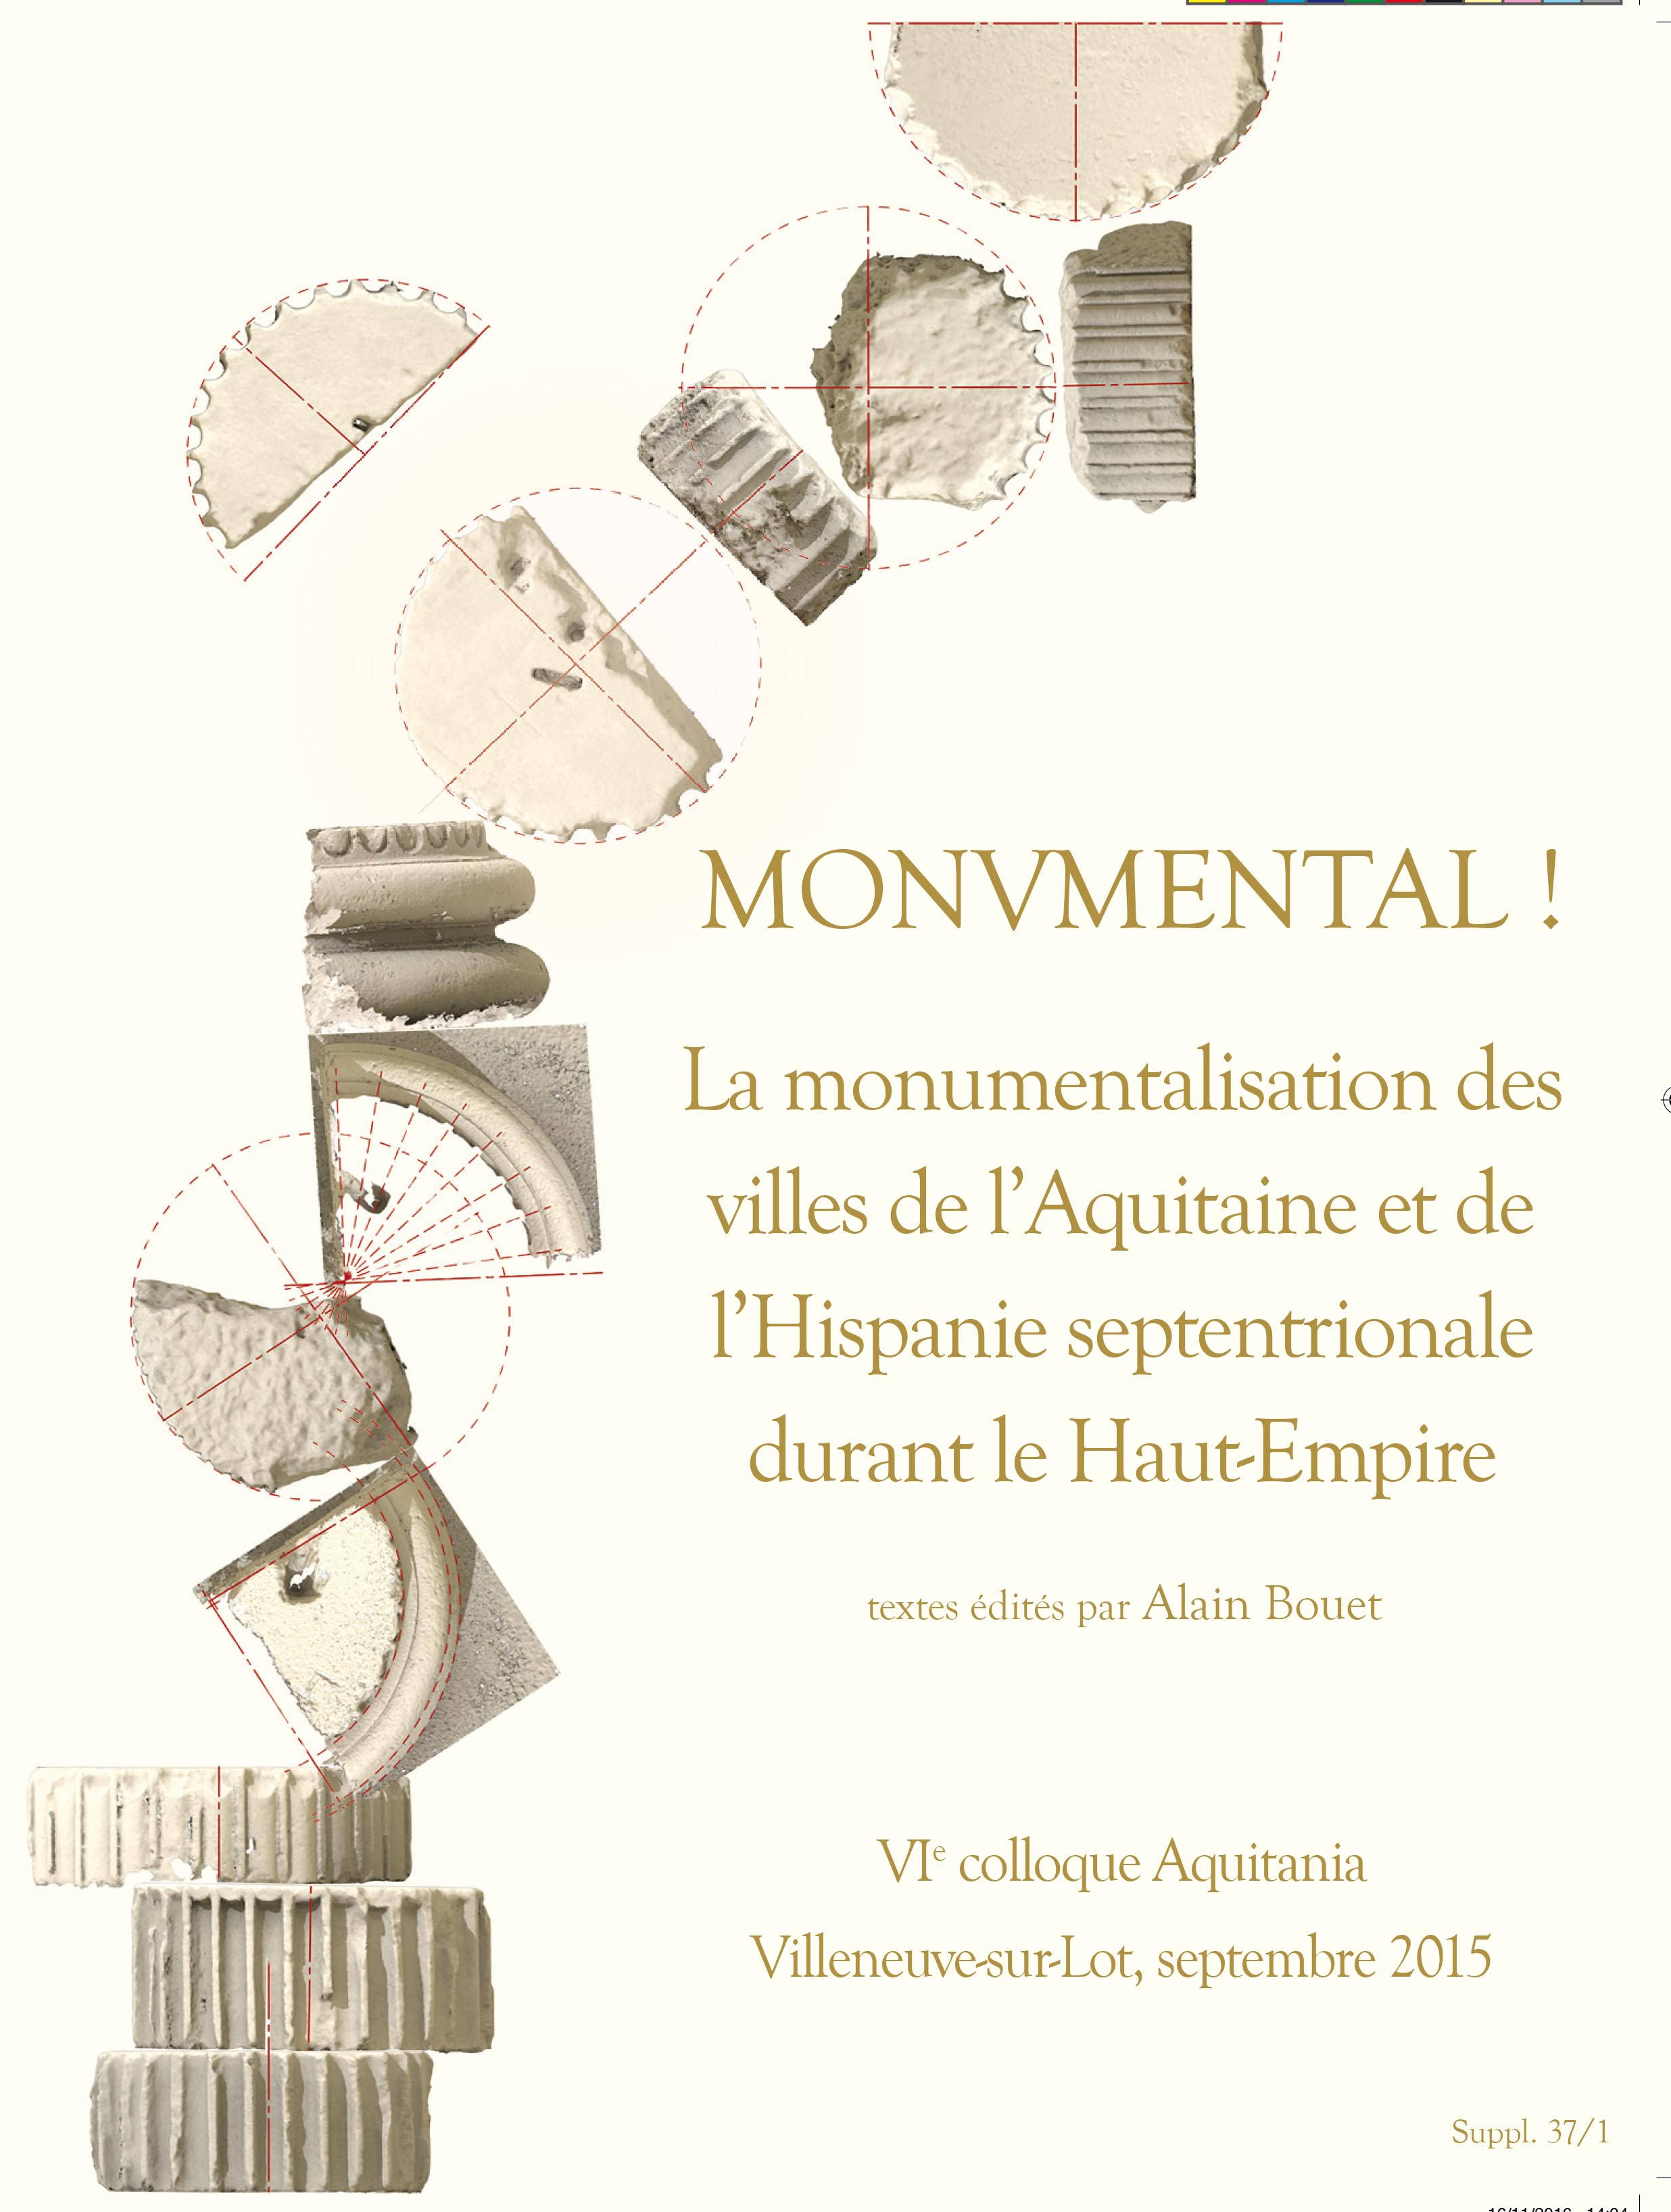 Monumental ! La monumentalisation des villes de l'Aquitaine et de l'Hispanie septentrionale durant le Haut-Empire, (suppl. Aquitania 37), 2016, 842 p., 2 vol.